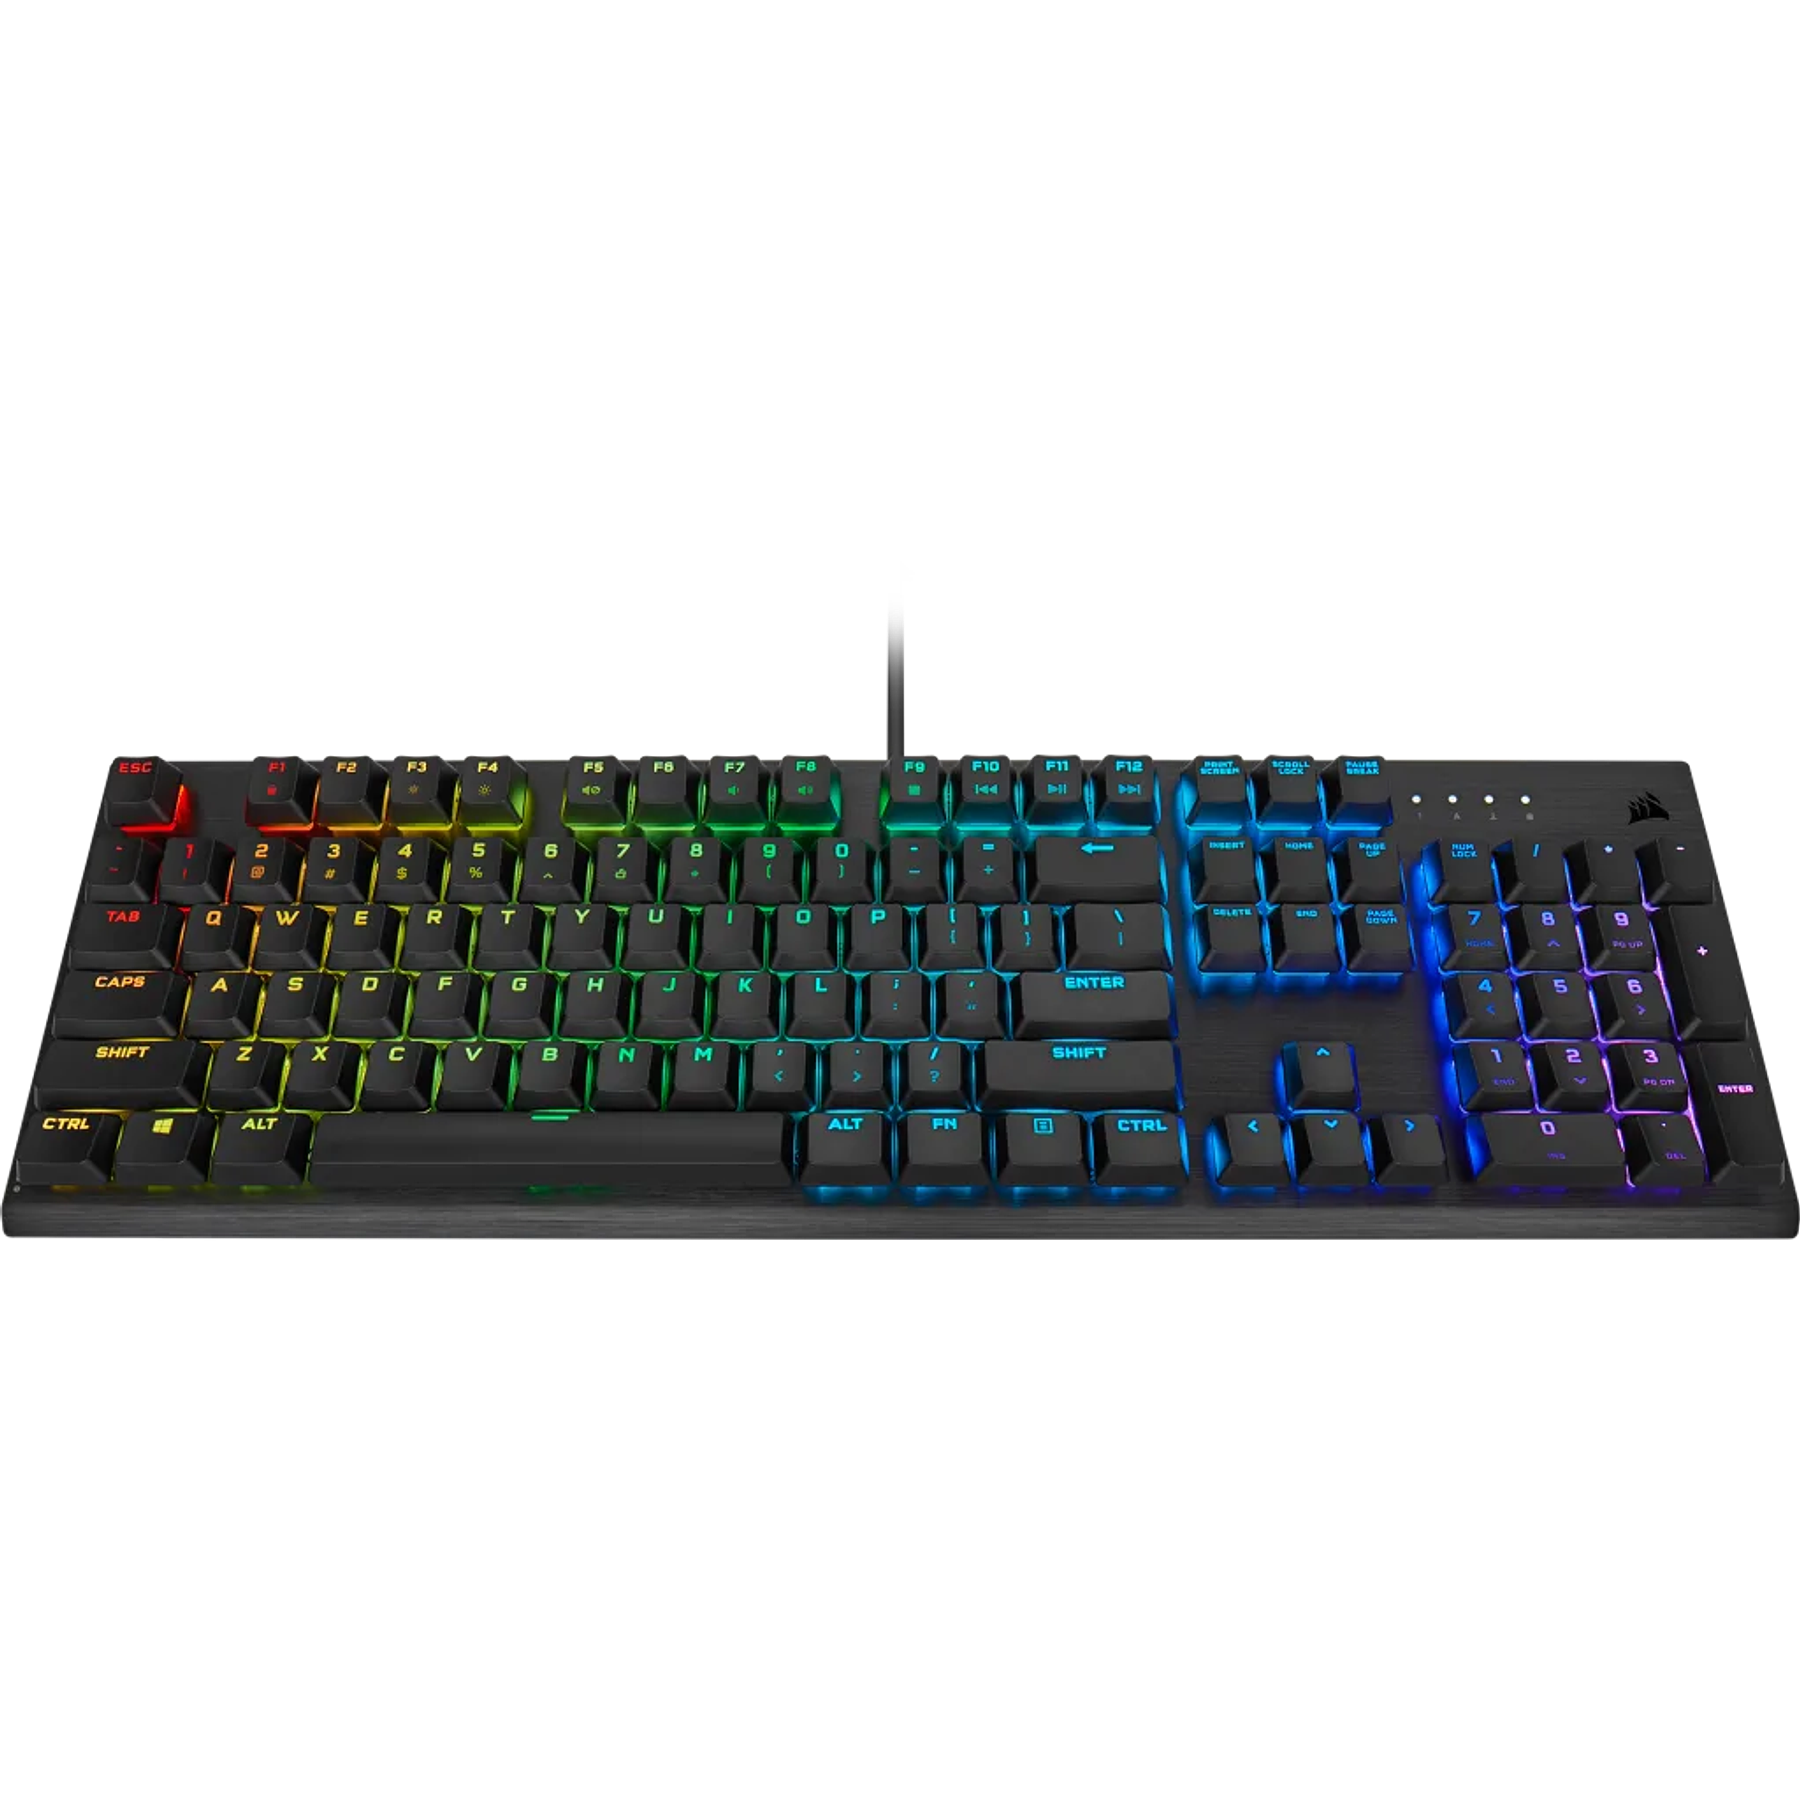 K60 Pro Gaming Keyboard